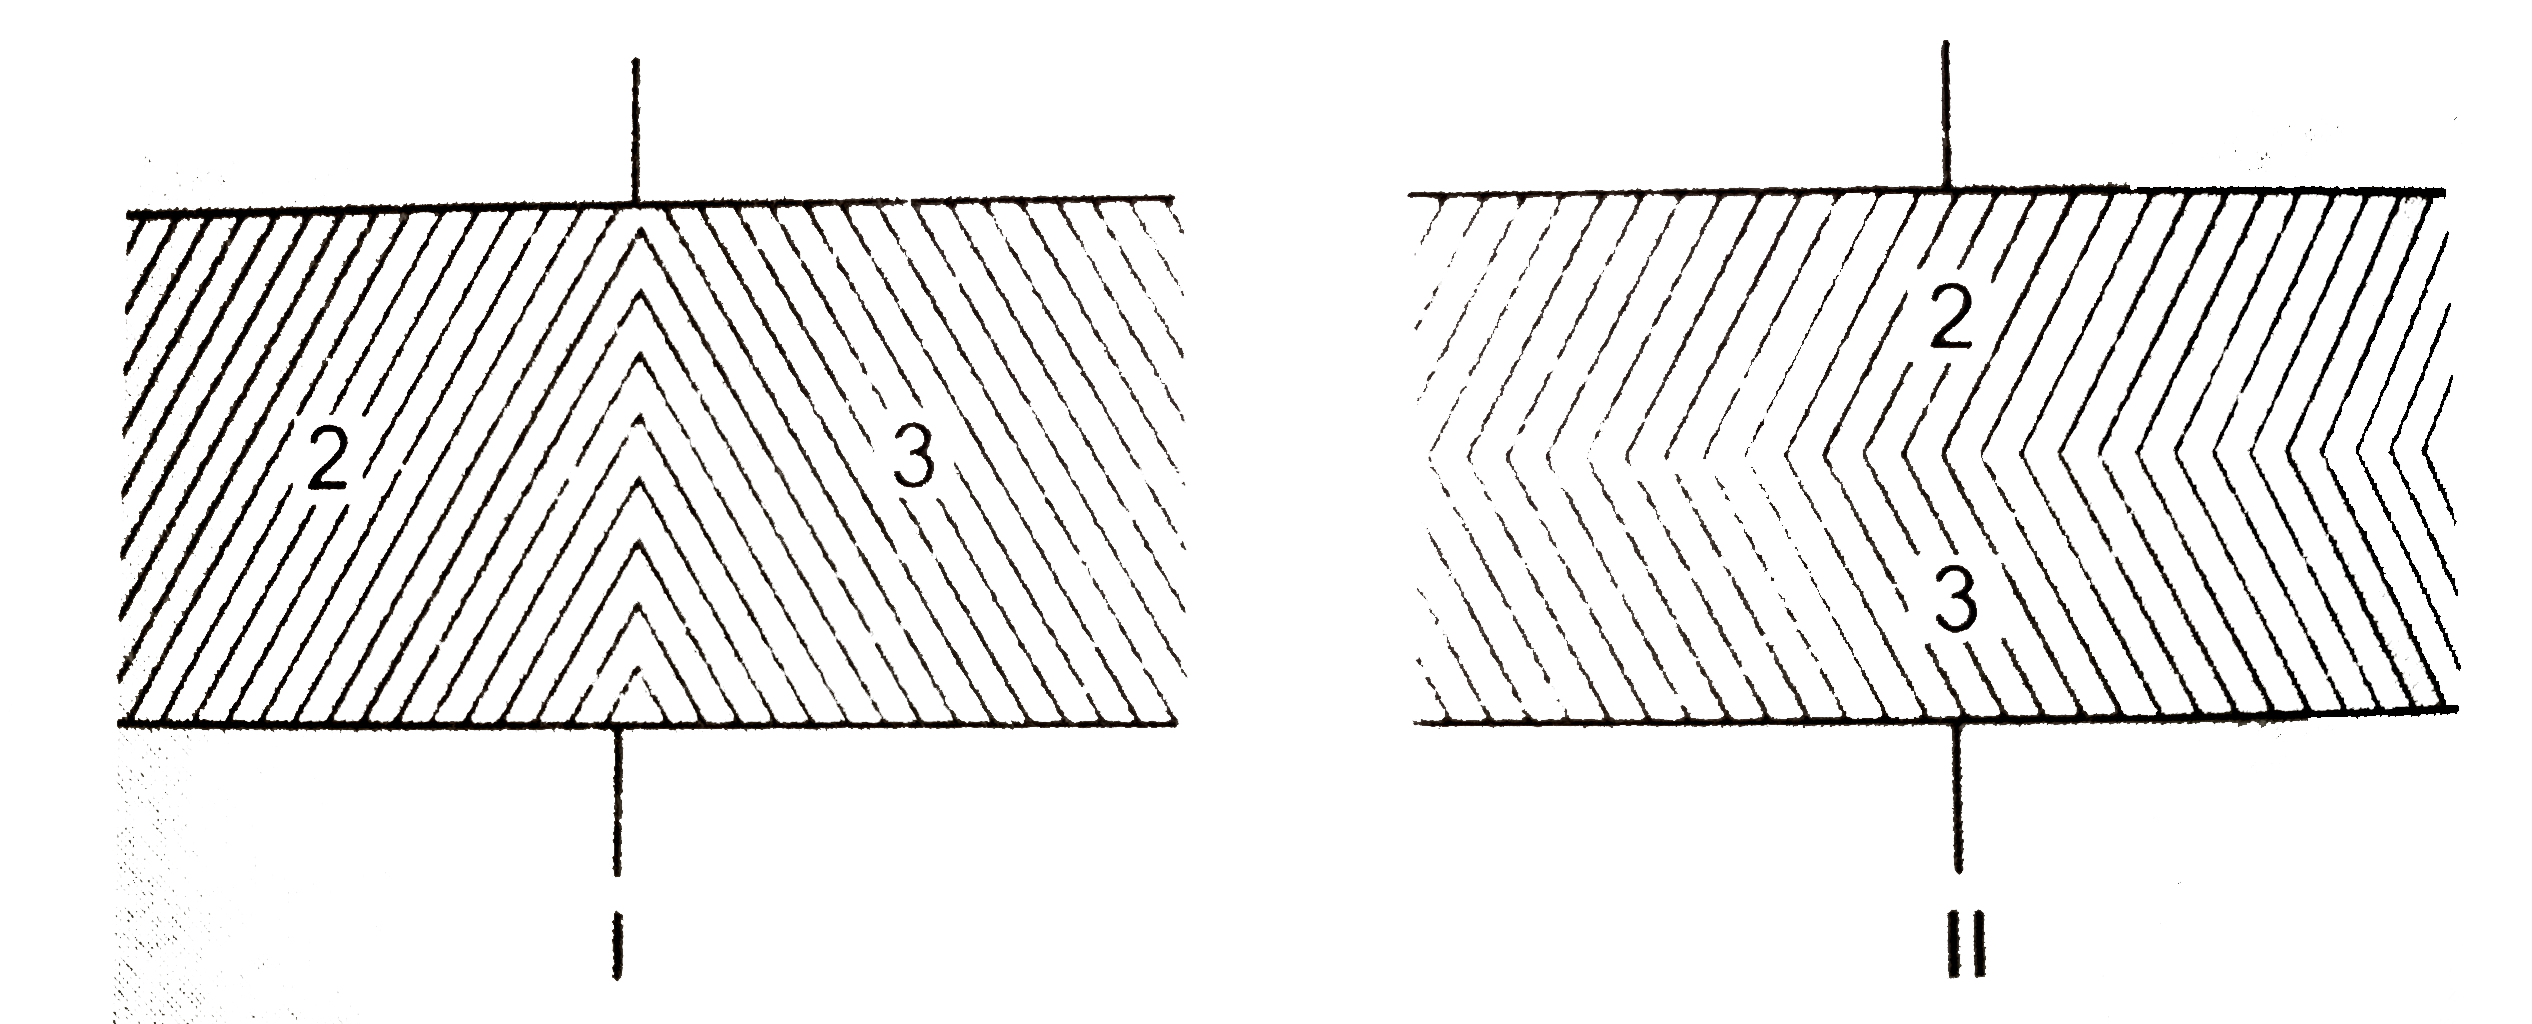 एक समान्तर प्लेट संधारित्र की धारिता बिना किसी परावैघुत  के 0.5muF है। अब प्लेटों के बीच के स्थान को परावैघुतांक 2 तथा 3 के दो परावैघुत पदार्थों की समान मात्राओं से (चित्र) में दिखाए गए दो विन्यासों में बारी-बारी से भरा जाता है। धारिताओं C(1) तथा C(11) का अनुपात ज्ञात कीजिये।